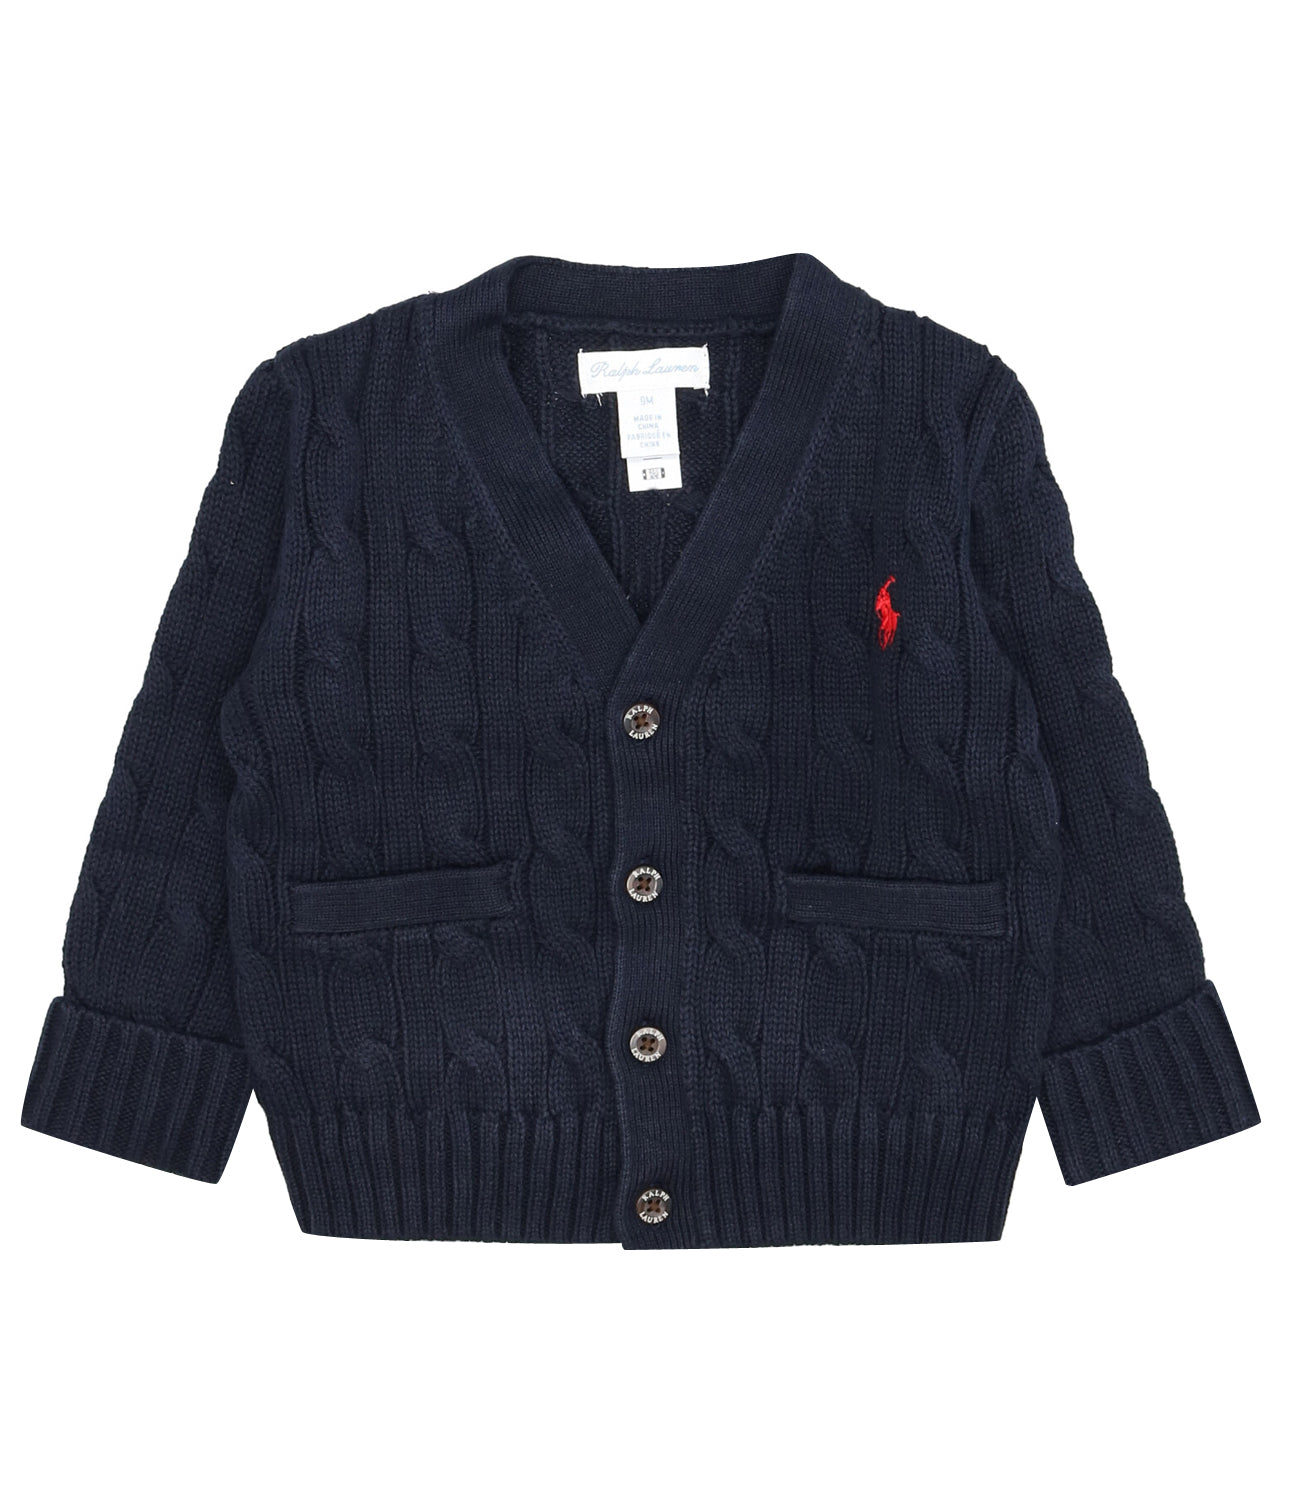 Ralph Lauren Childrenswear | Navy Blue Cardigan